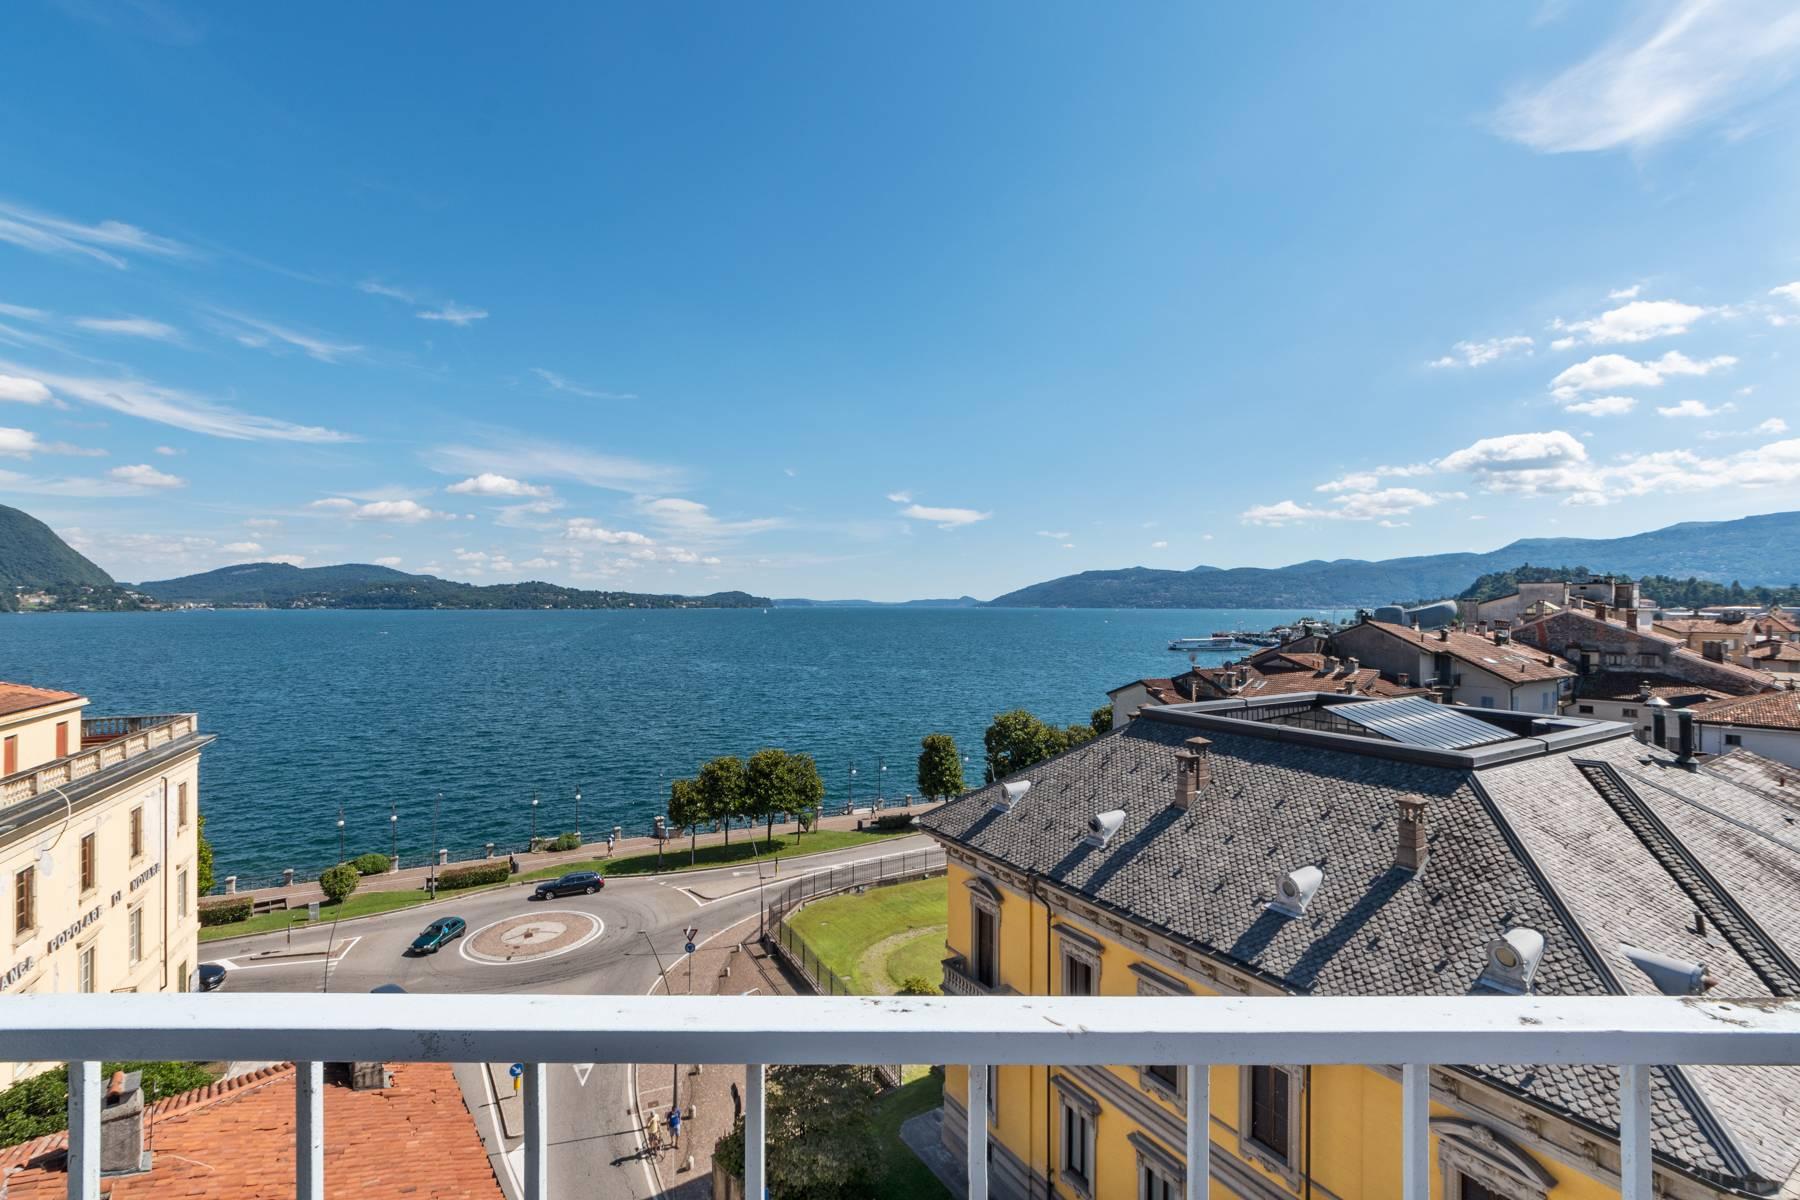 Attico mozzafiato con balcone e terrazza che dominano tutto il lago Maggiore situato nel centro di Intra - 27